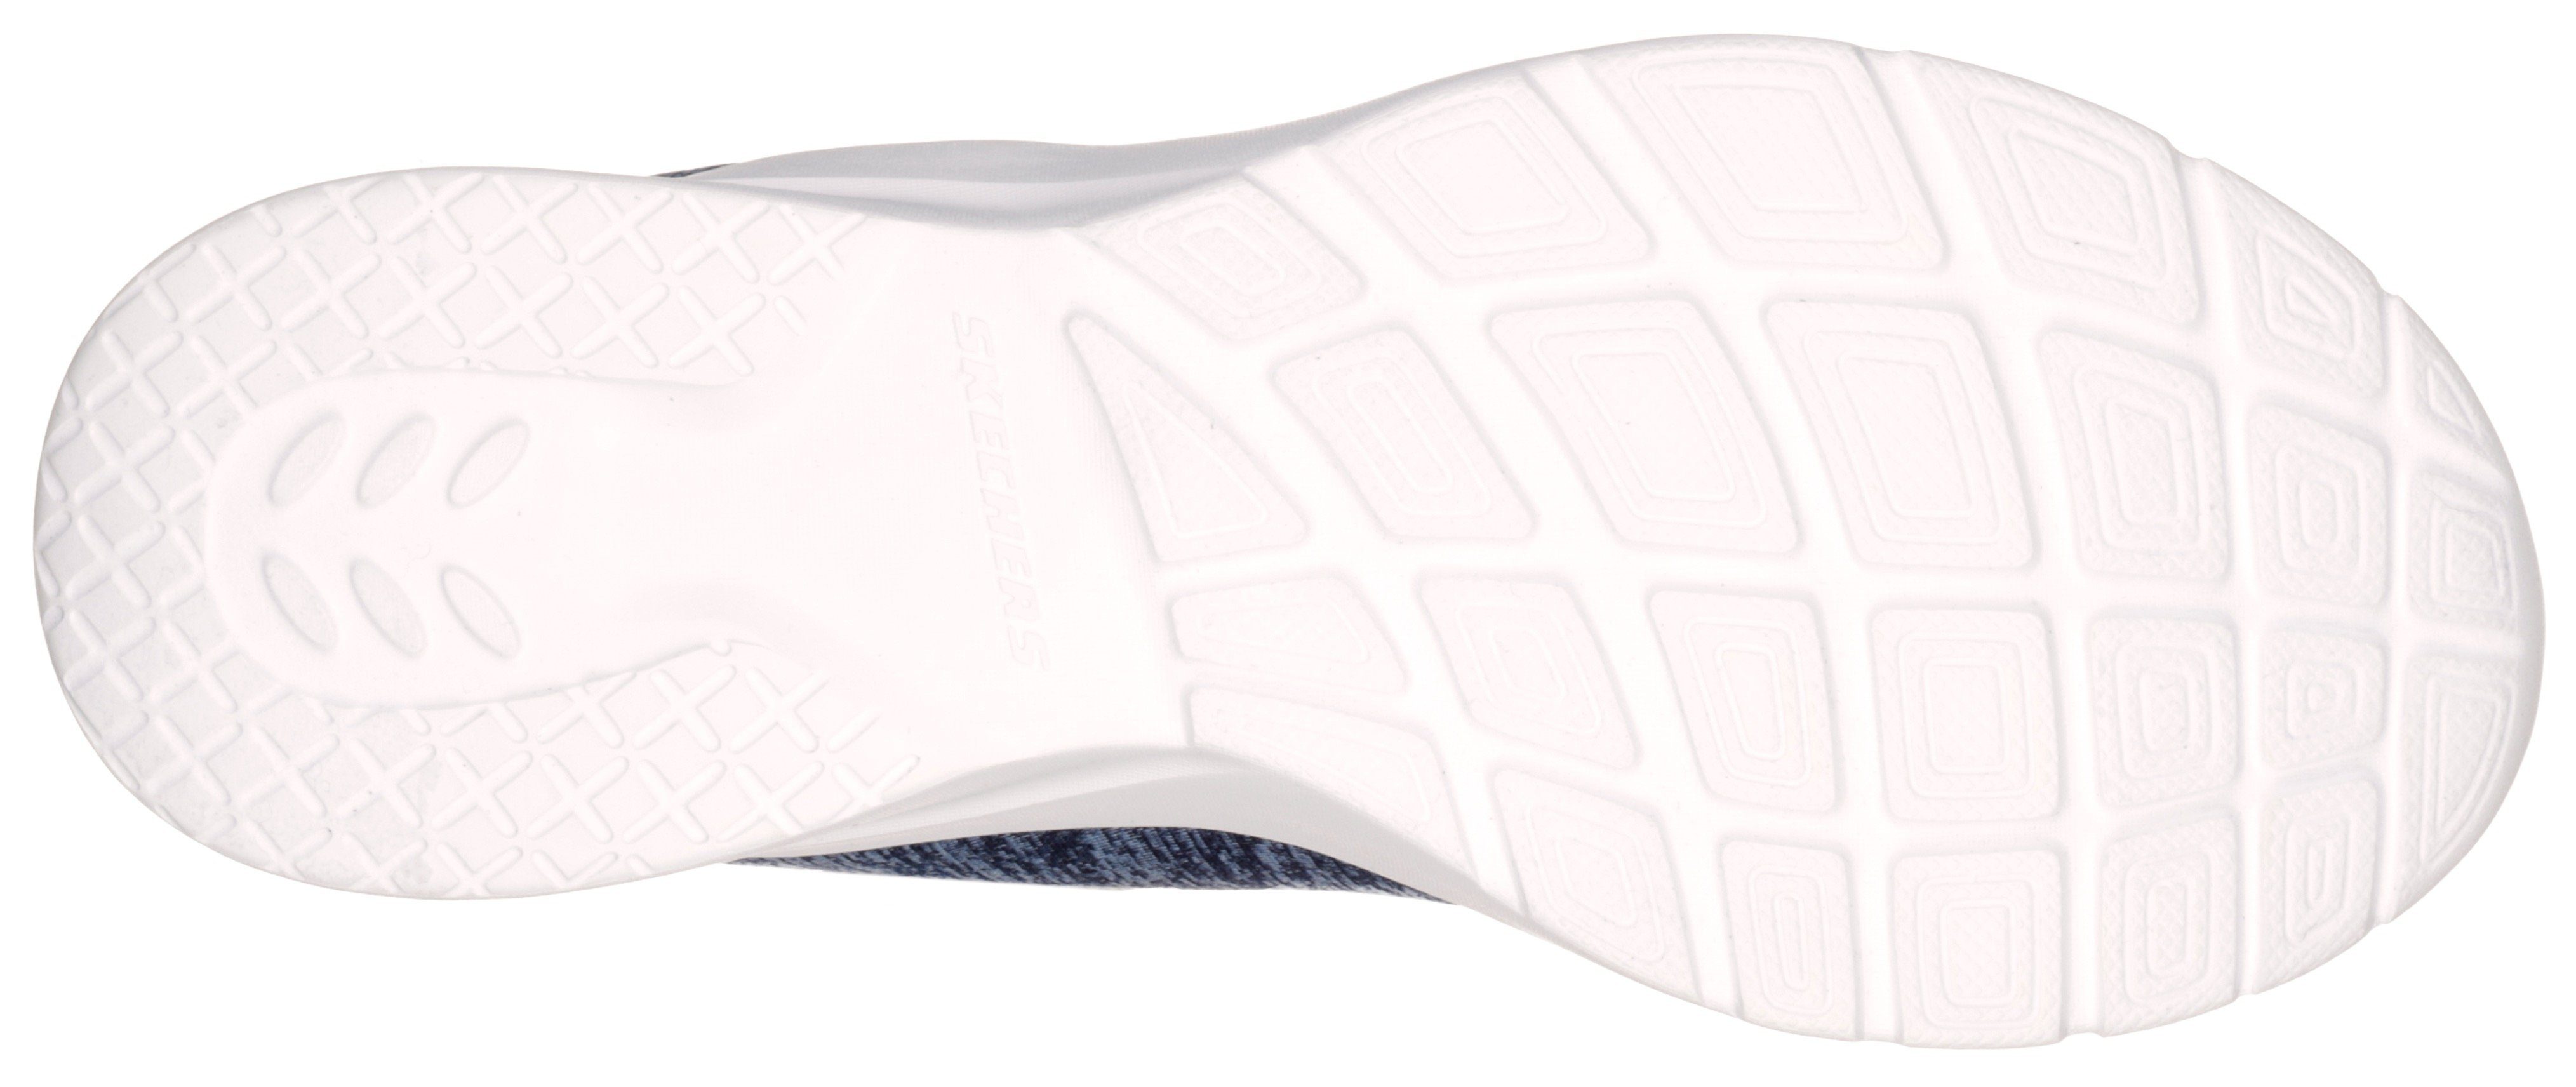 navy-rosa FLASH DYNAMIGHT Maschinenwäsche geeignet A 2.0-IN Slip-On für Skechers Sneaker